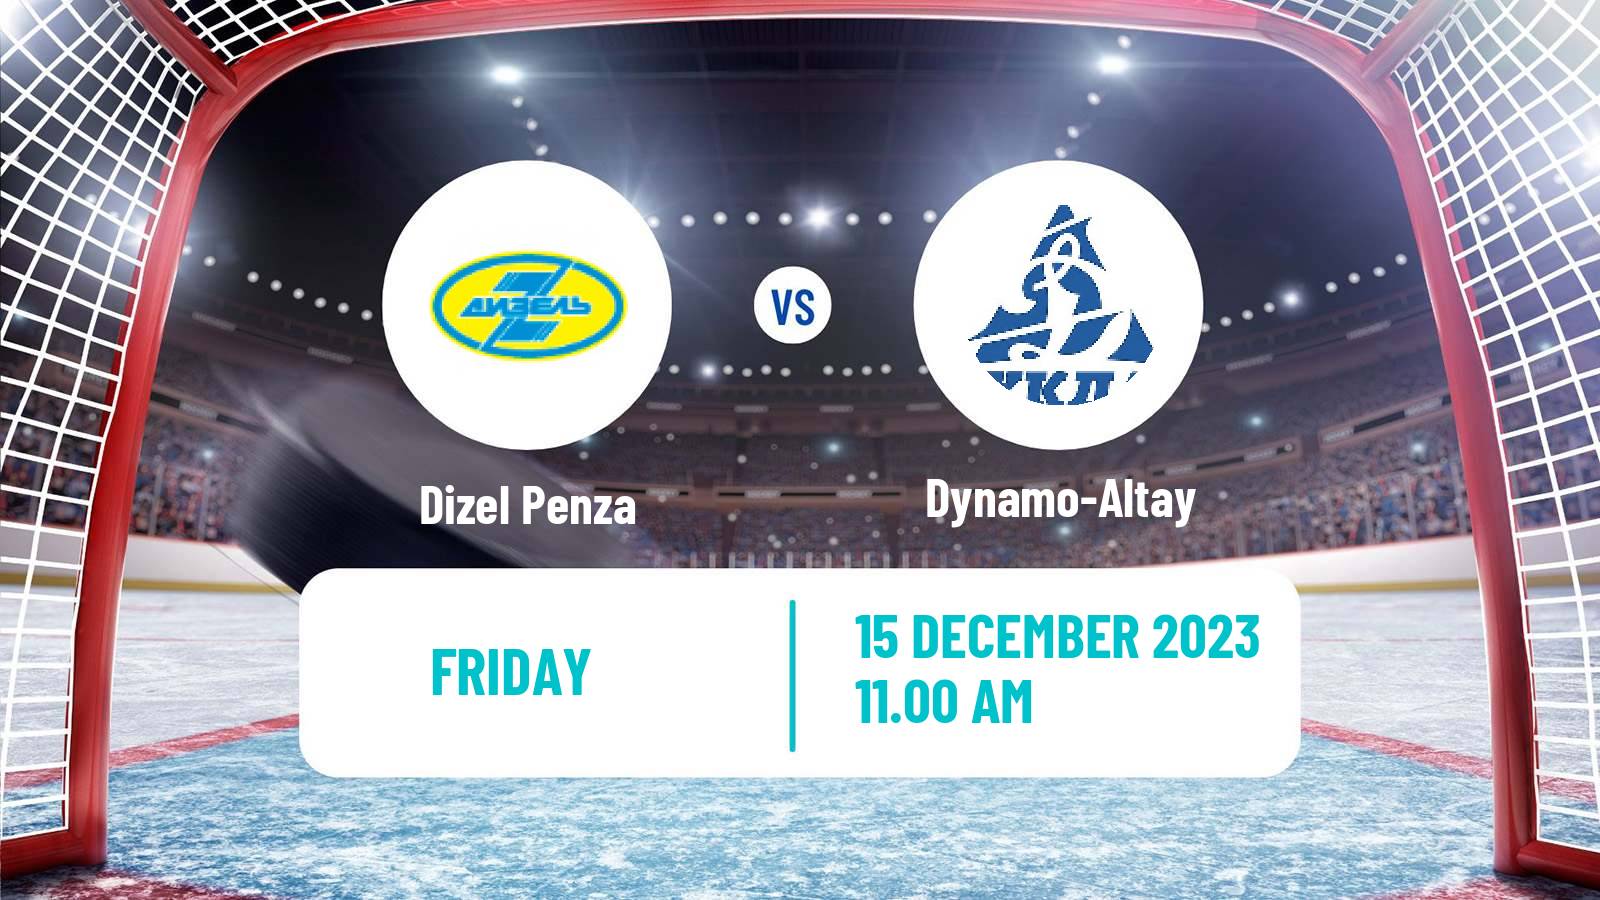 Hockey VHL Dizel Penza - Dynamo-Altay